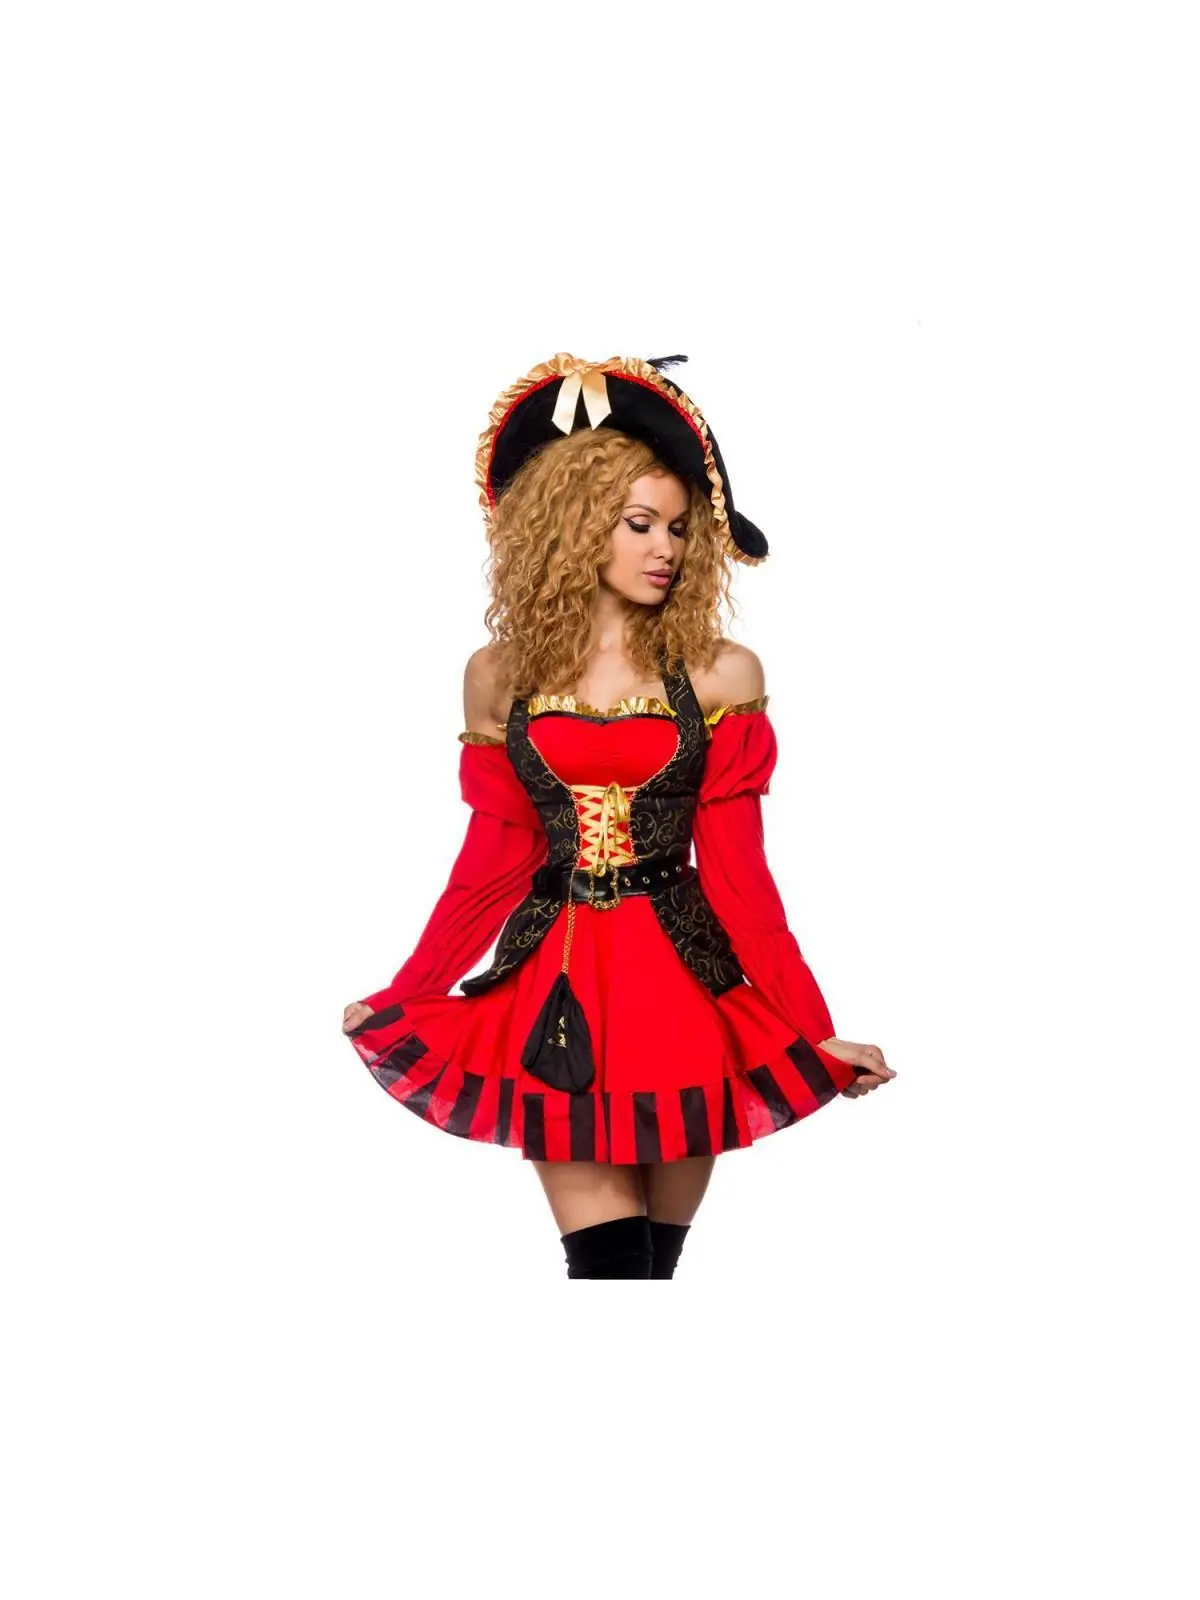 edles Piraten Kostüm rot/schwarz kaufen - Fesselliebe